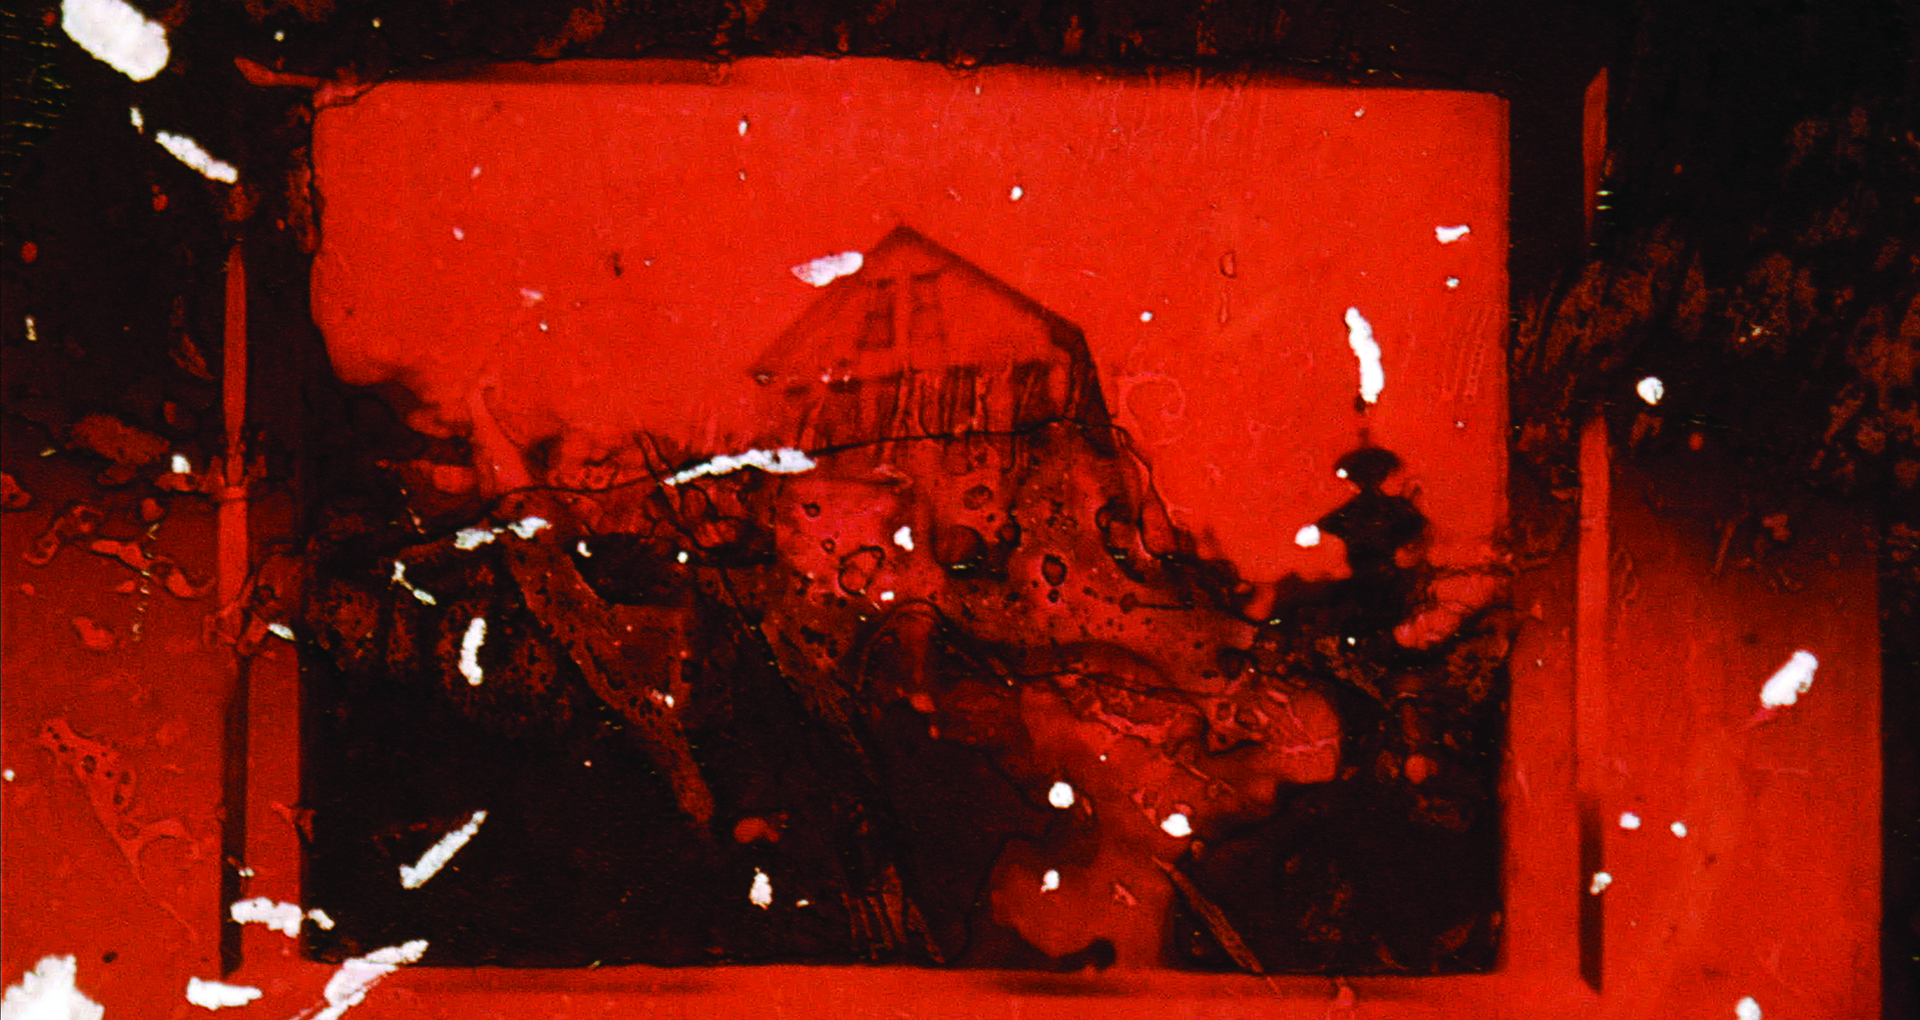 Image couleur flou, en noir et orange. Une maison en arrière plan. De la pellicule brûlée et grattée en premier plan